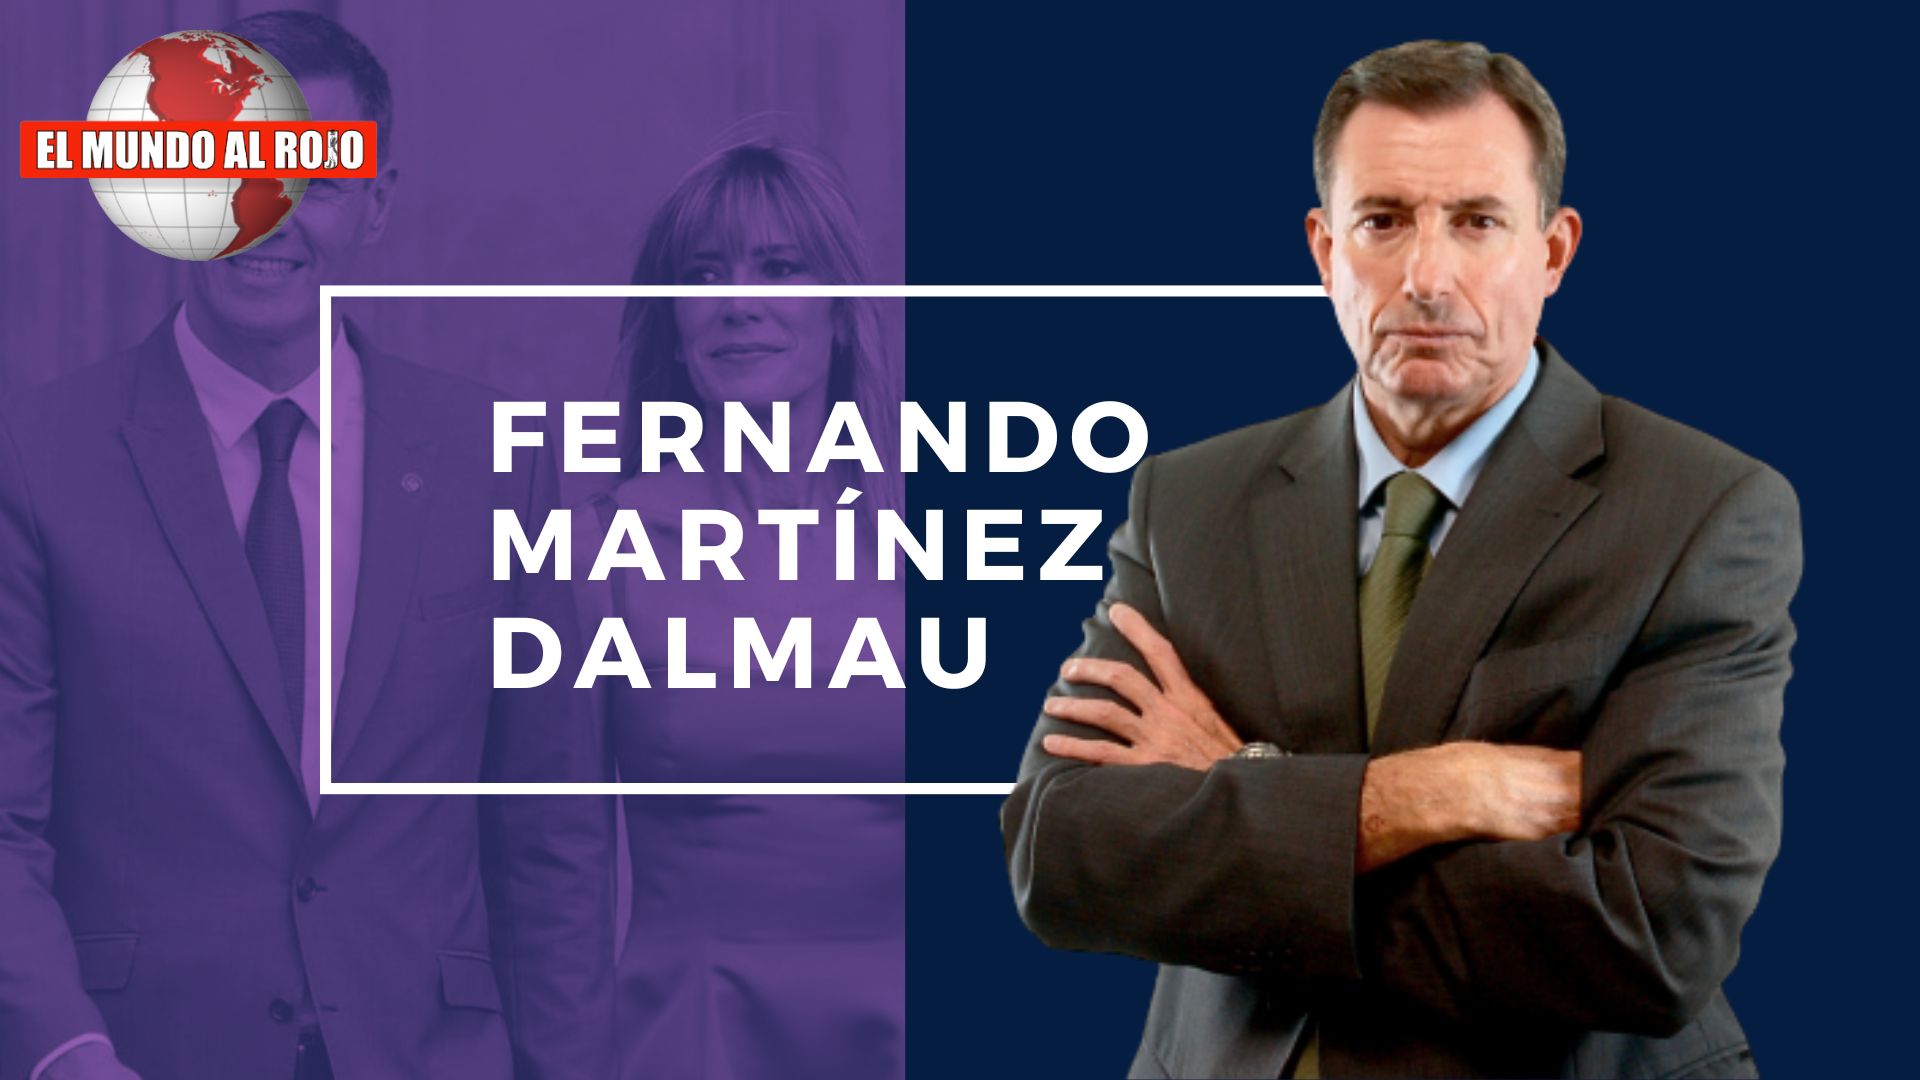 FERNANDO MARTÍNEZ-DALMAU, PEDRO SÁNCHEZ TIENE QUE SER INHABILITADO POR EL CASO BEGOÑA